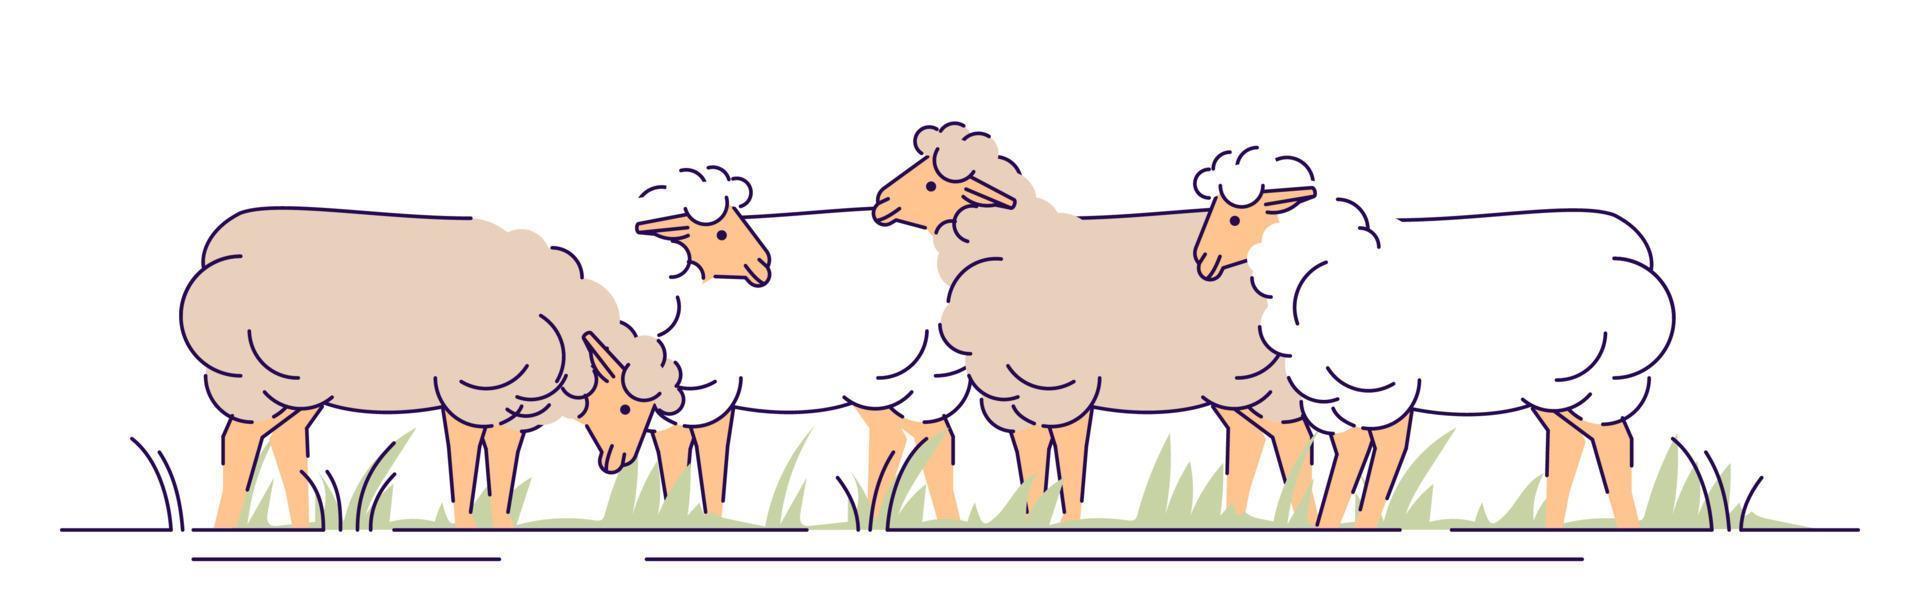 rebaño de ovejas en la ilustración de vector plano de pasto. ganadería, concepto de dibujos animados de cría de animales con contorno. pastoreo de ovejas. elemento de diseño aislado de producción de carne de cordero y lana de oveja